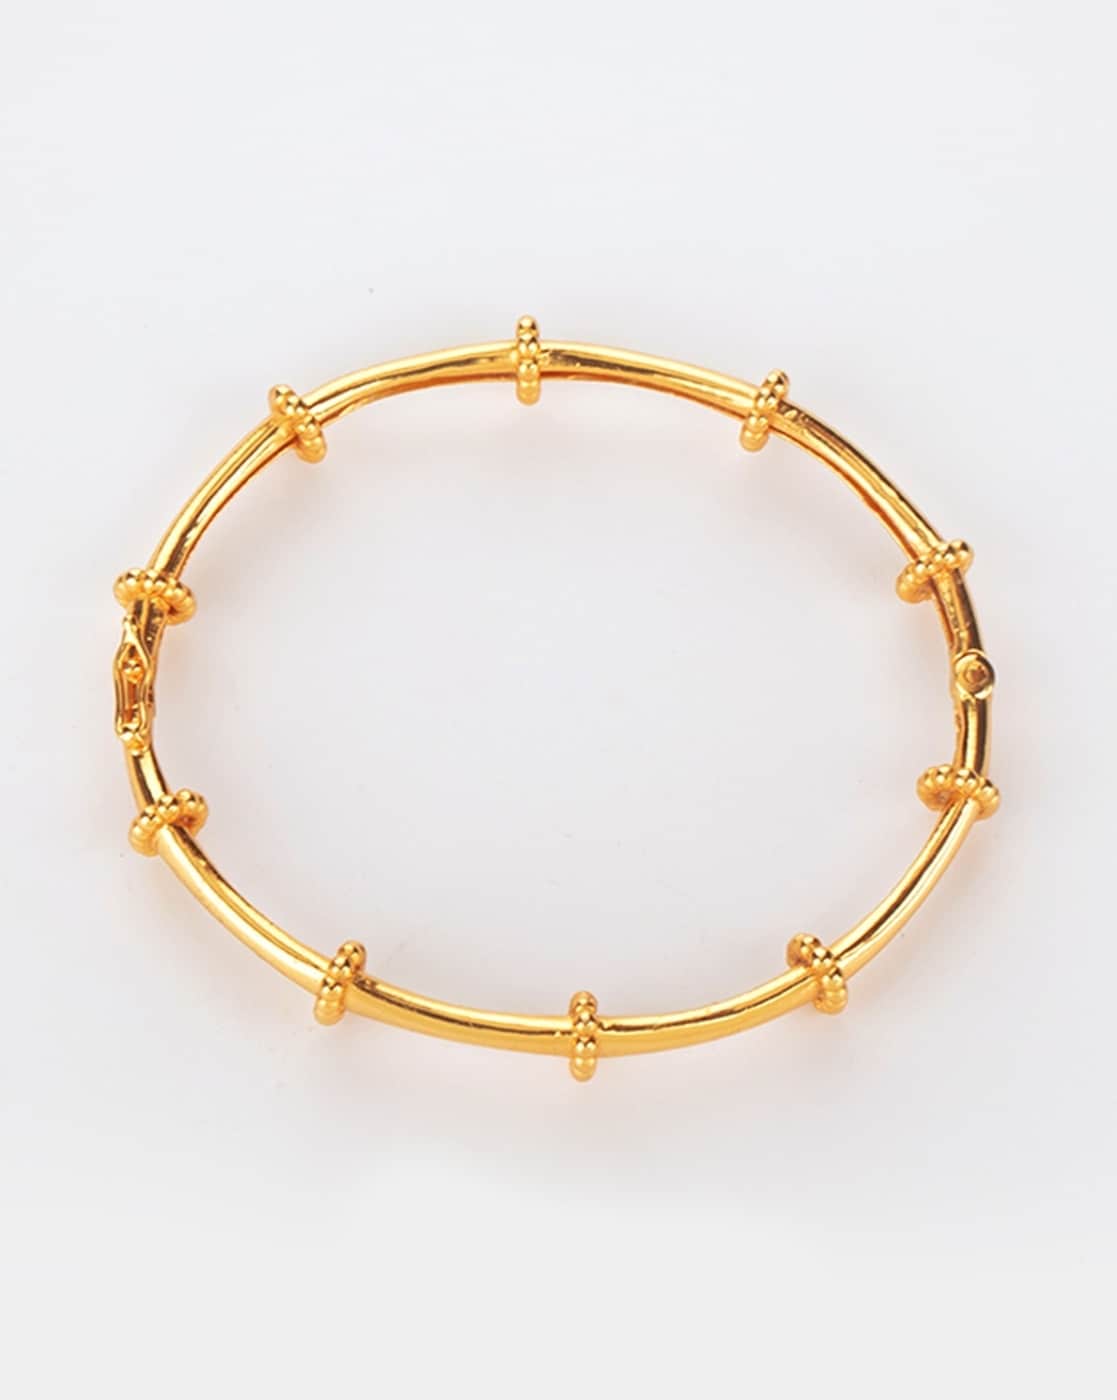 24k Gold Bracelet All Bars 125 Gram Custom 8.5 Inches | eBay